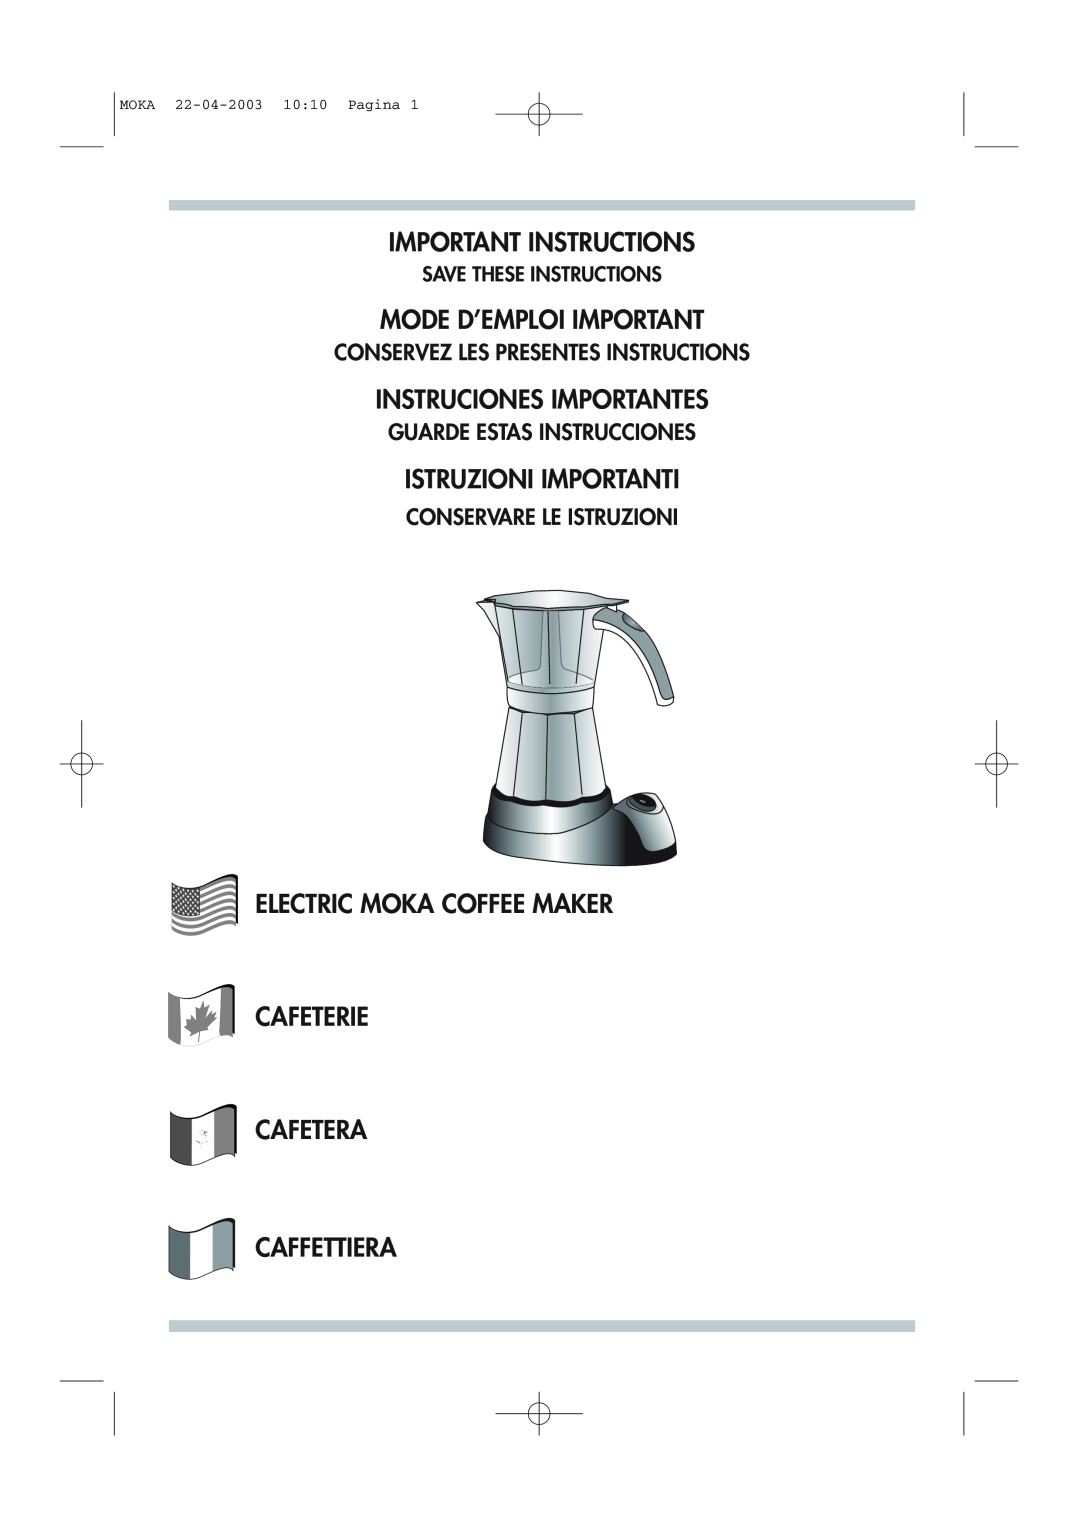 DeLonghi Electric Coffee Maker manual Important Instructions, Mode D’Emploi Important, Instruciones Importantes 